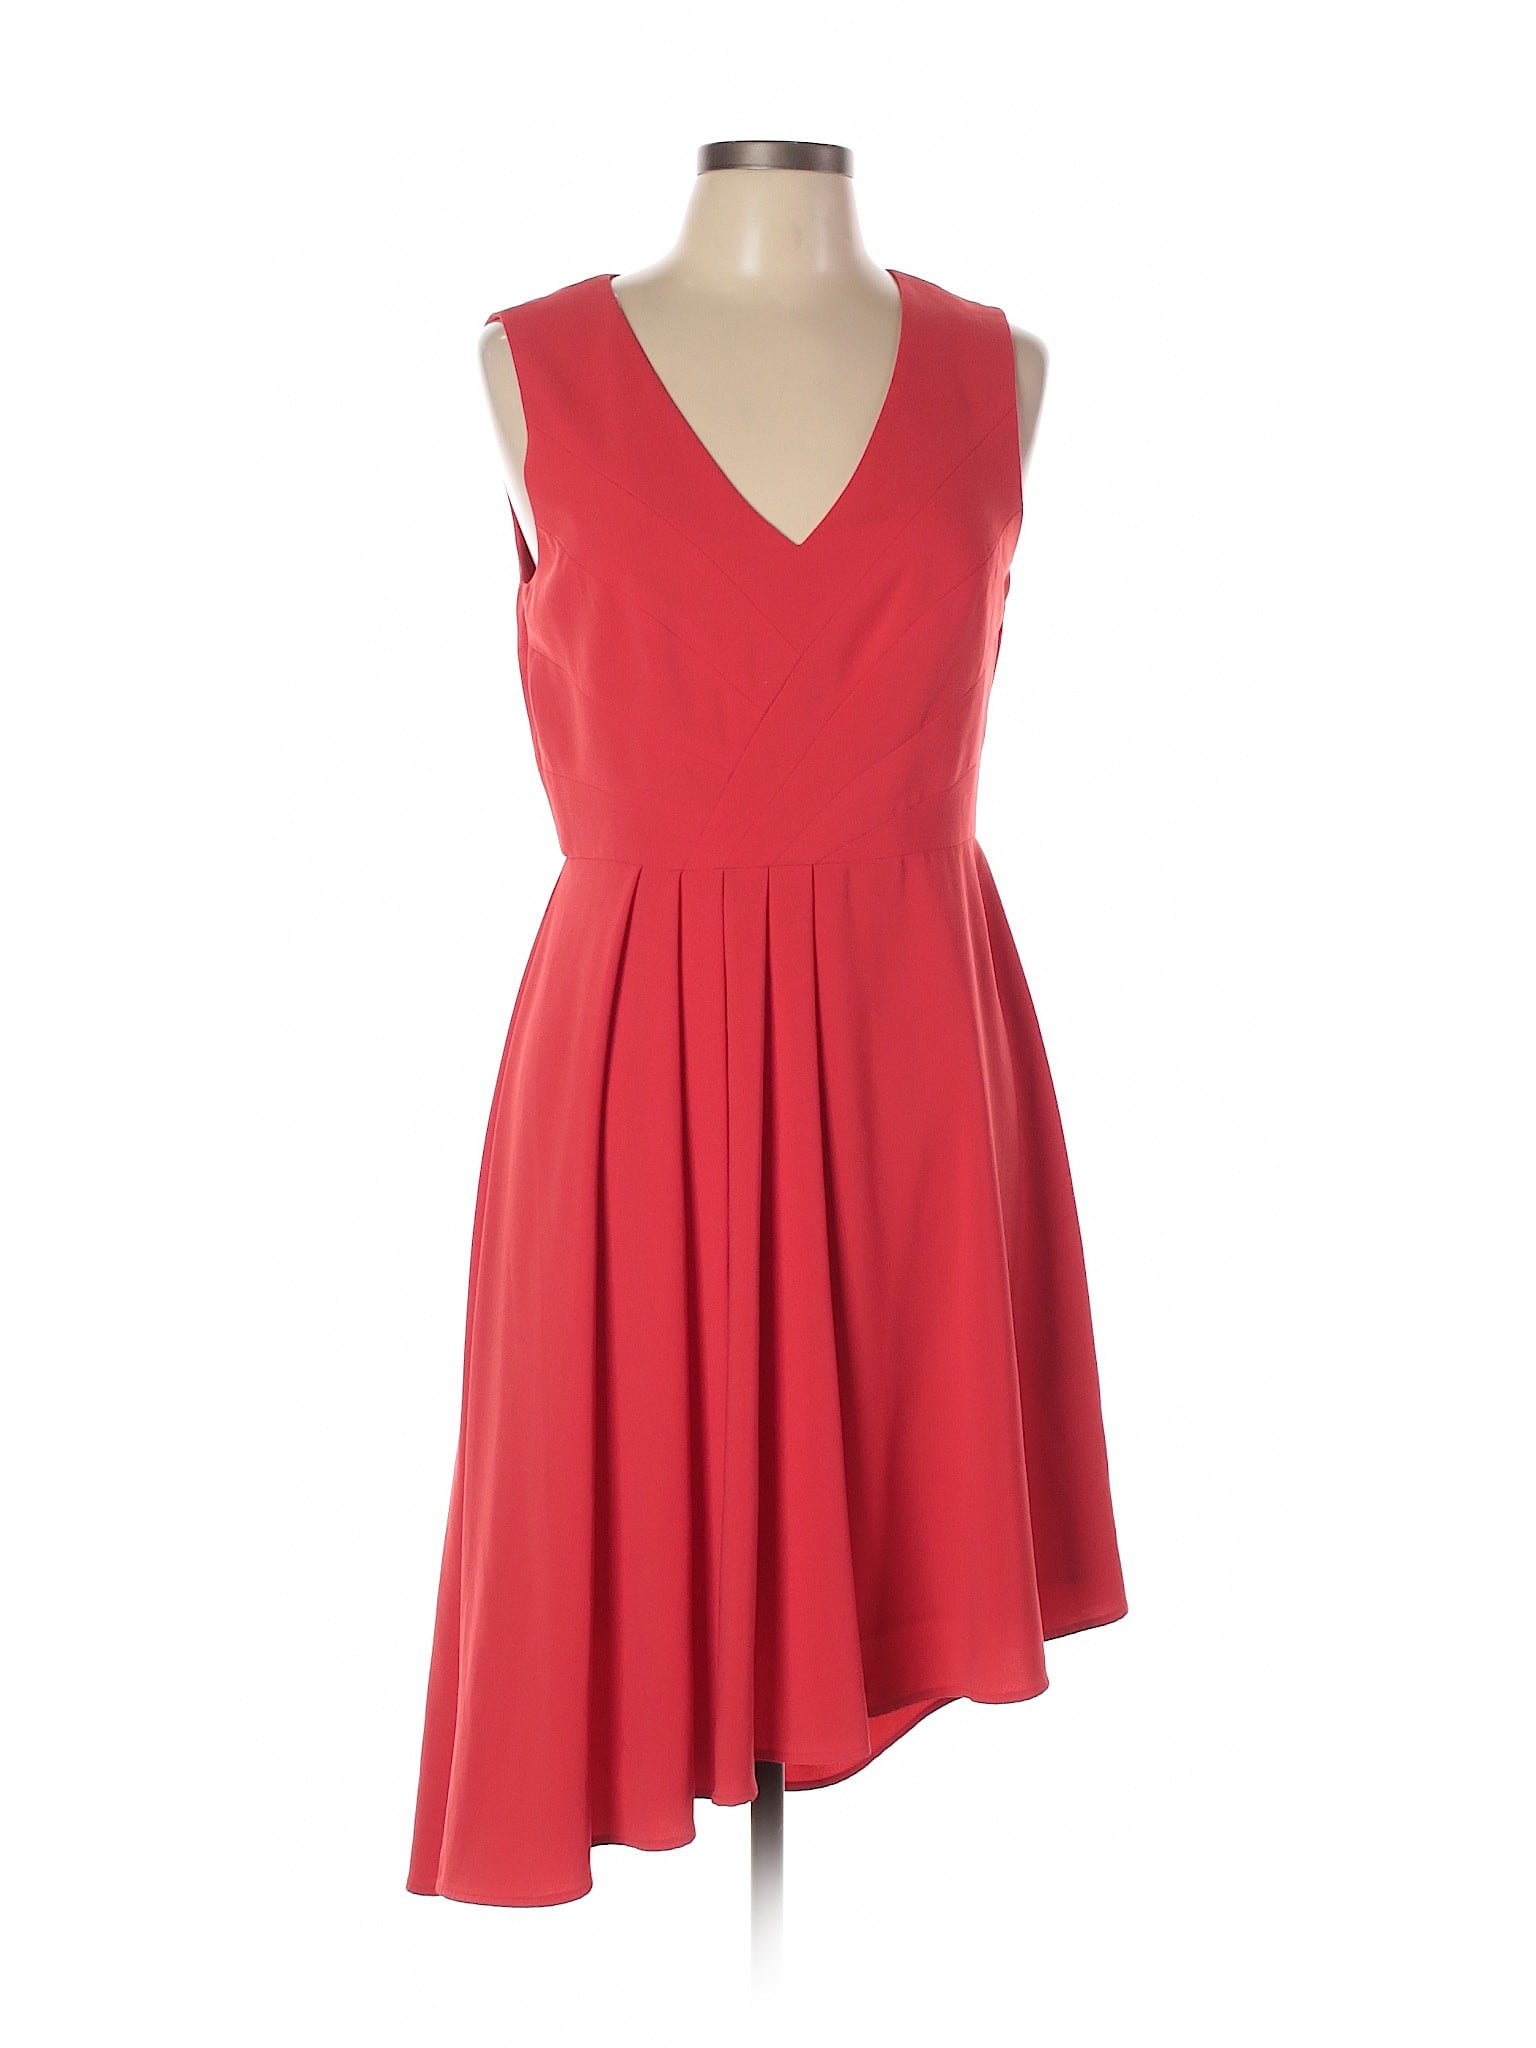 Ivy & Blu - Pre-Owned Ivy & Blu Women's Size 10 Casual Dress - Walmart ...